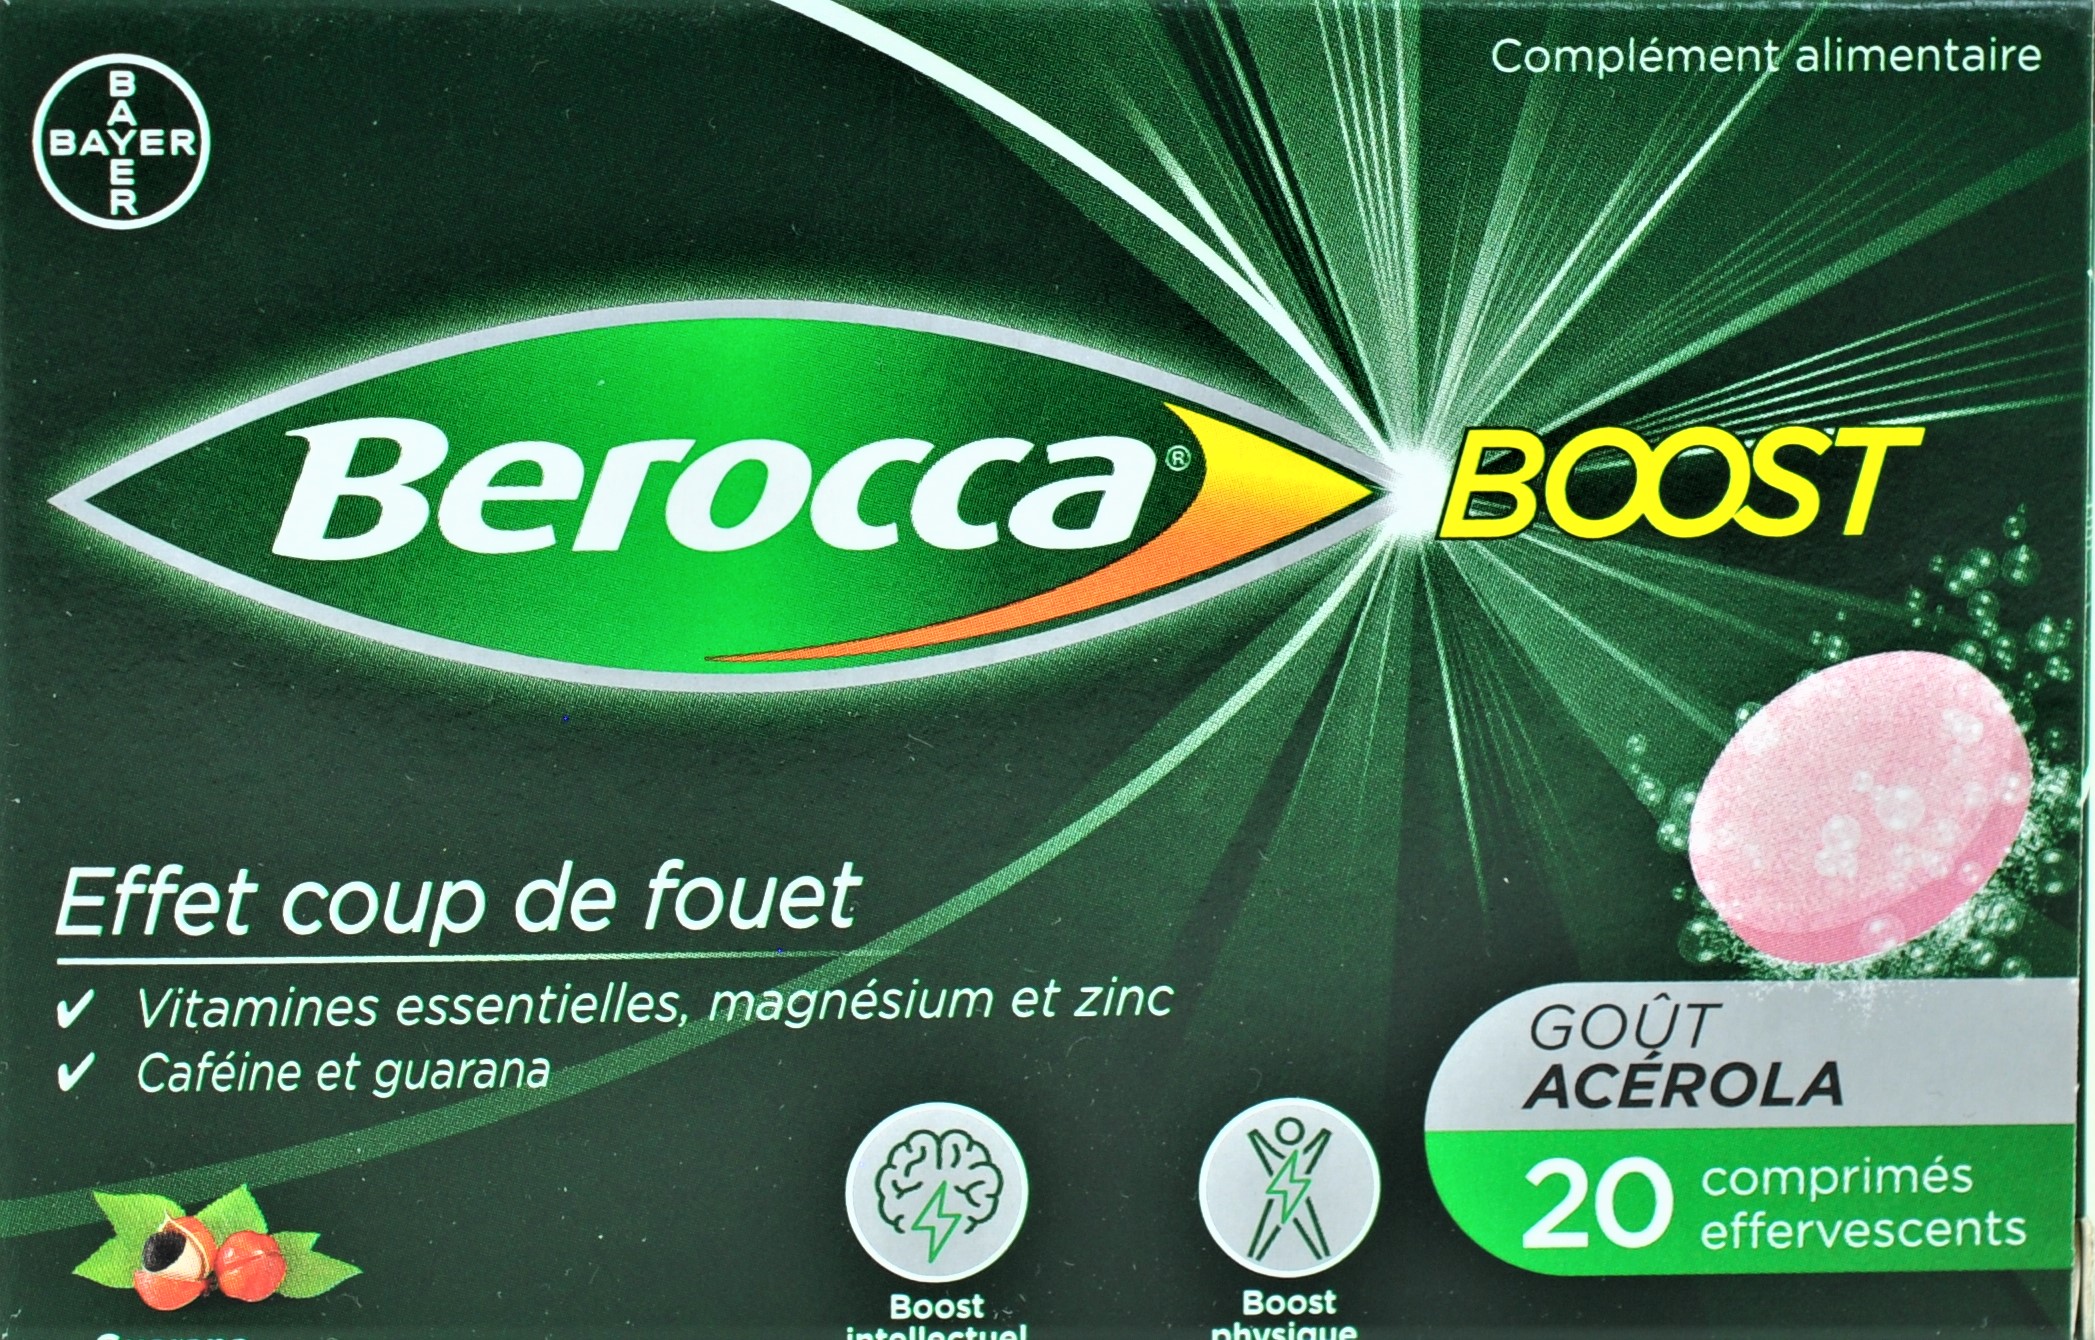 Berocca Energie - 60 comprimés effervescents - Pharmacie en ligne